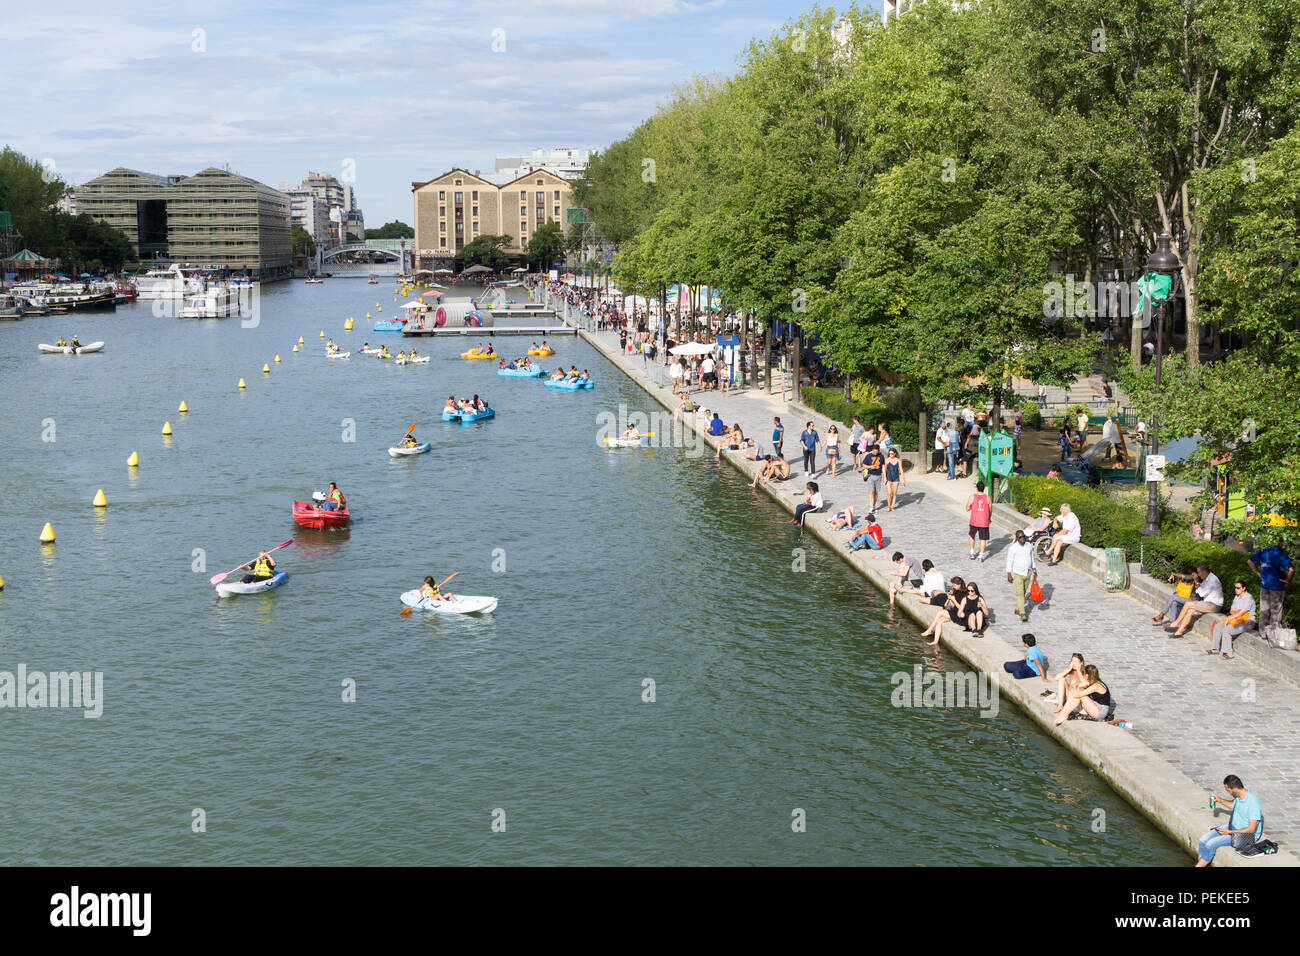 Paris l'été - activités de loisirs ont lieu chaque été dans le bassin de la Villette, lac artificiel dans le 19ème arrondissement. Banque D'Images